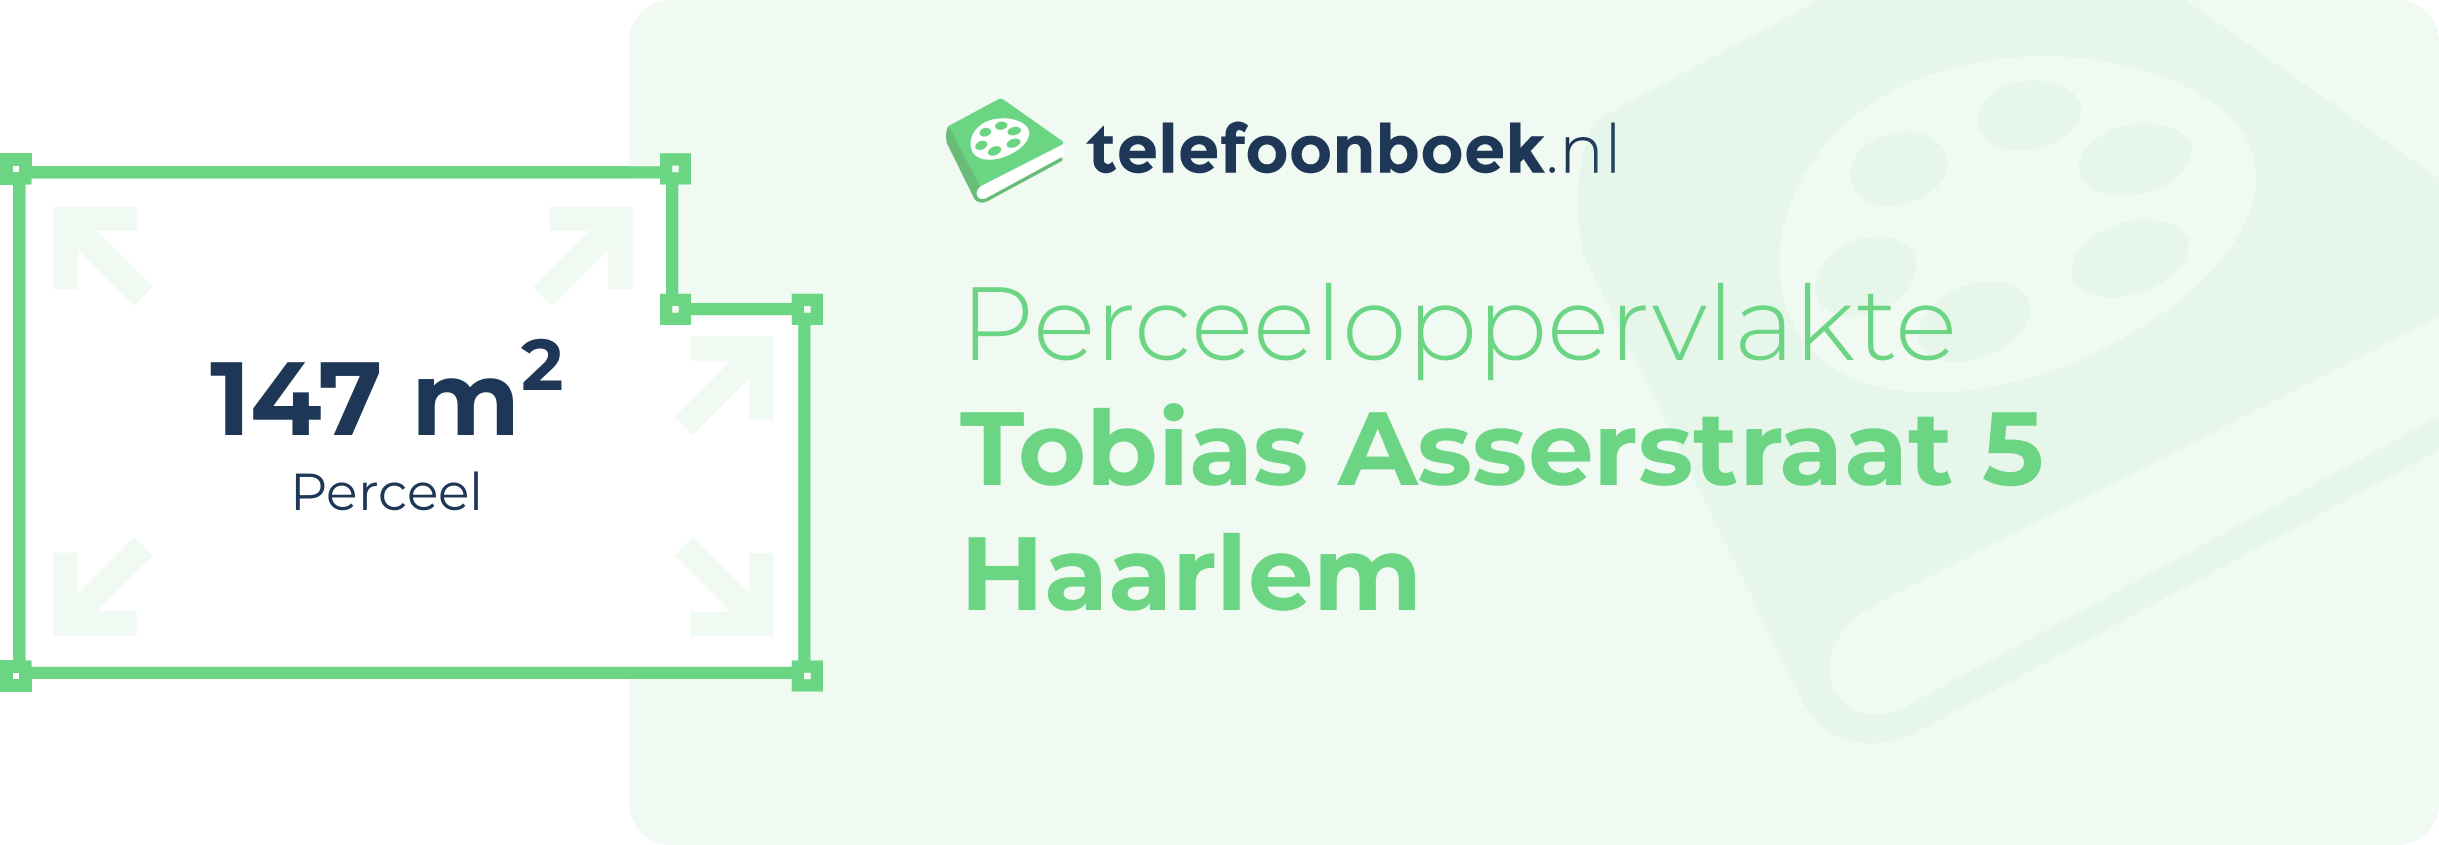 Perceeloppervlakte Tobias Asserstraat 5 Haarlem